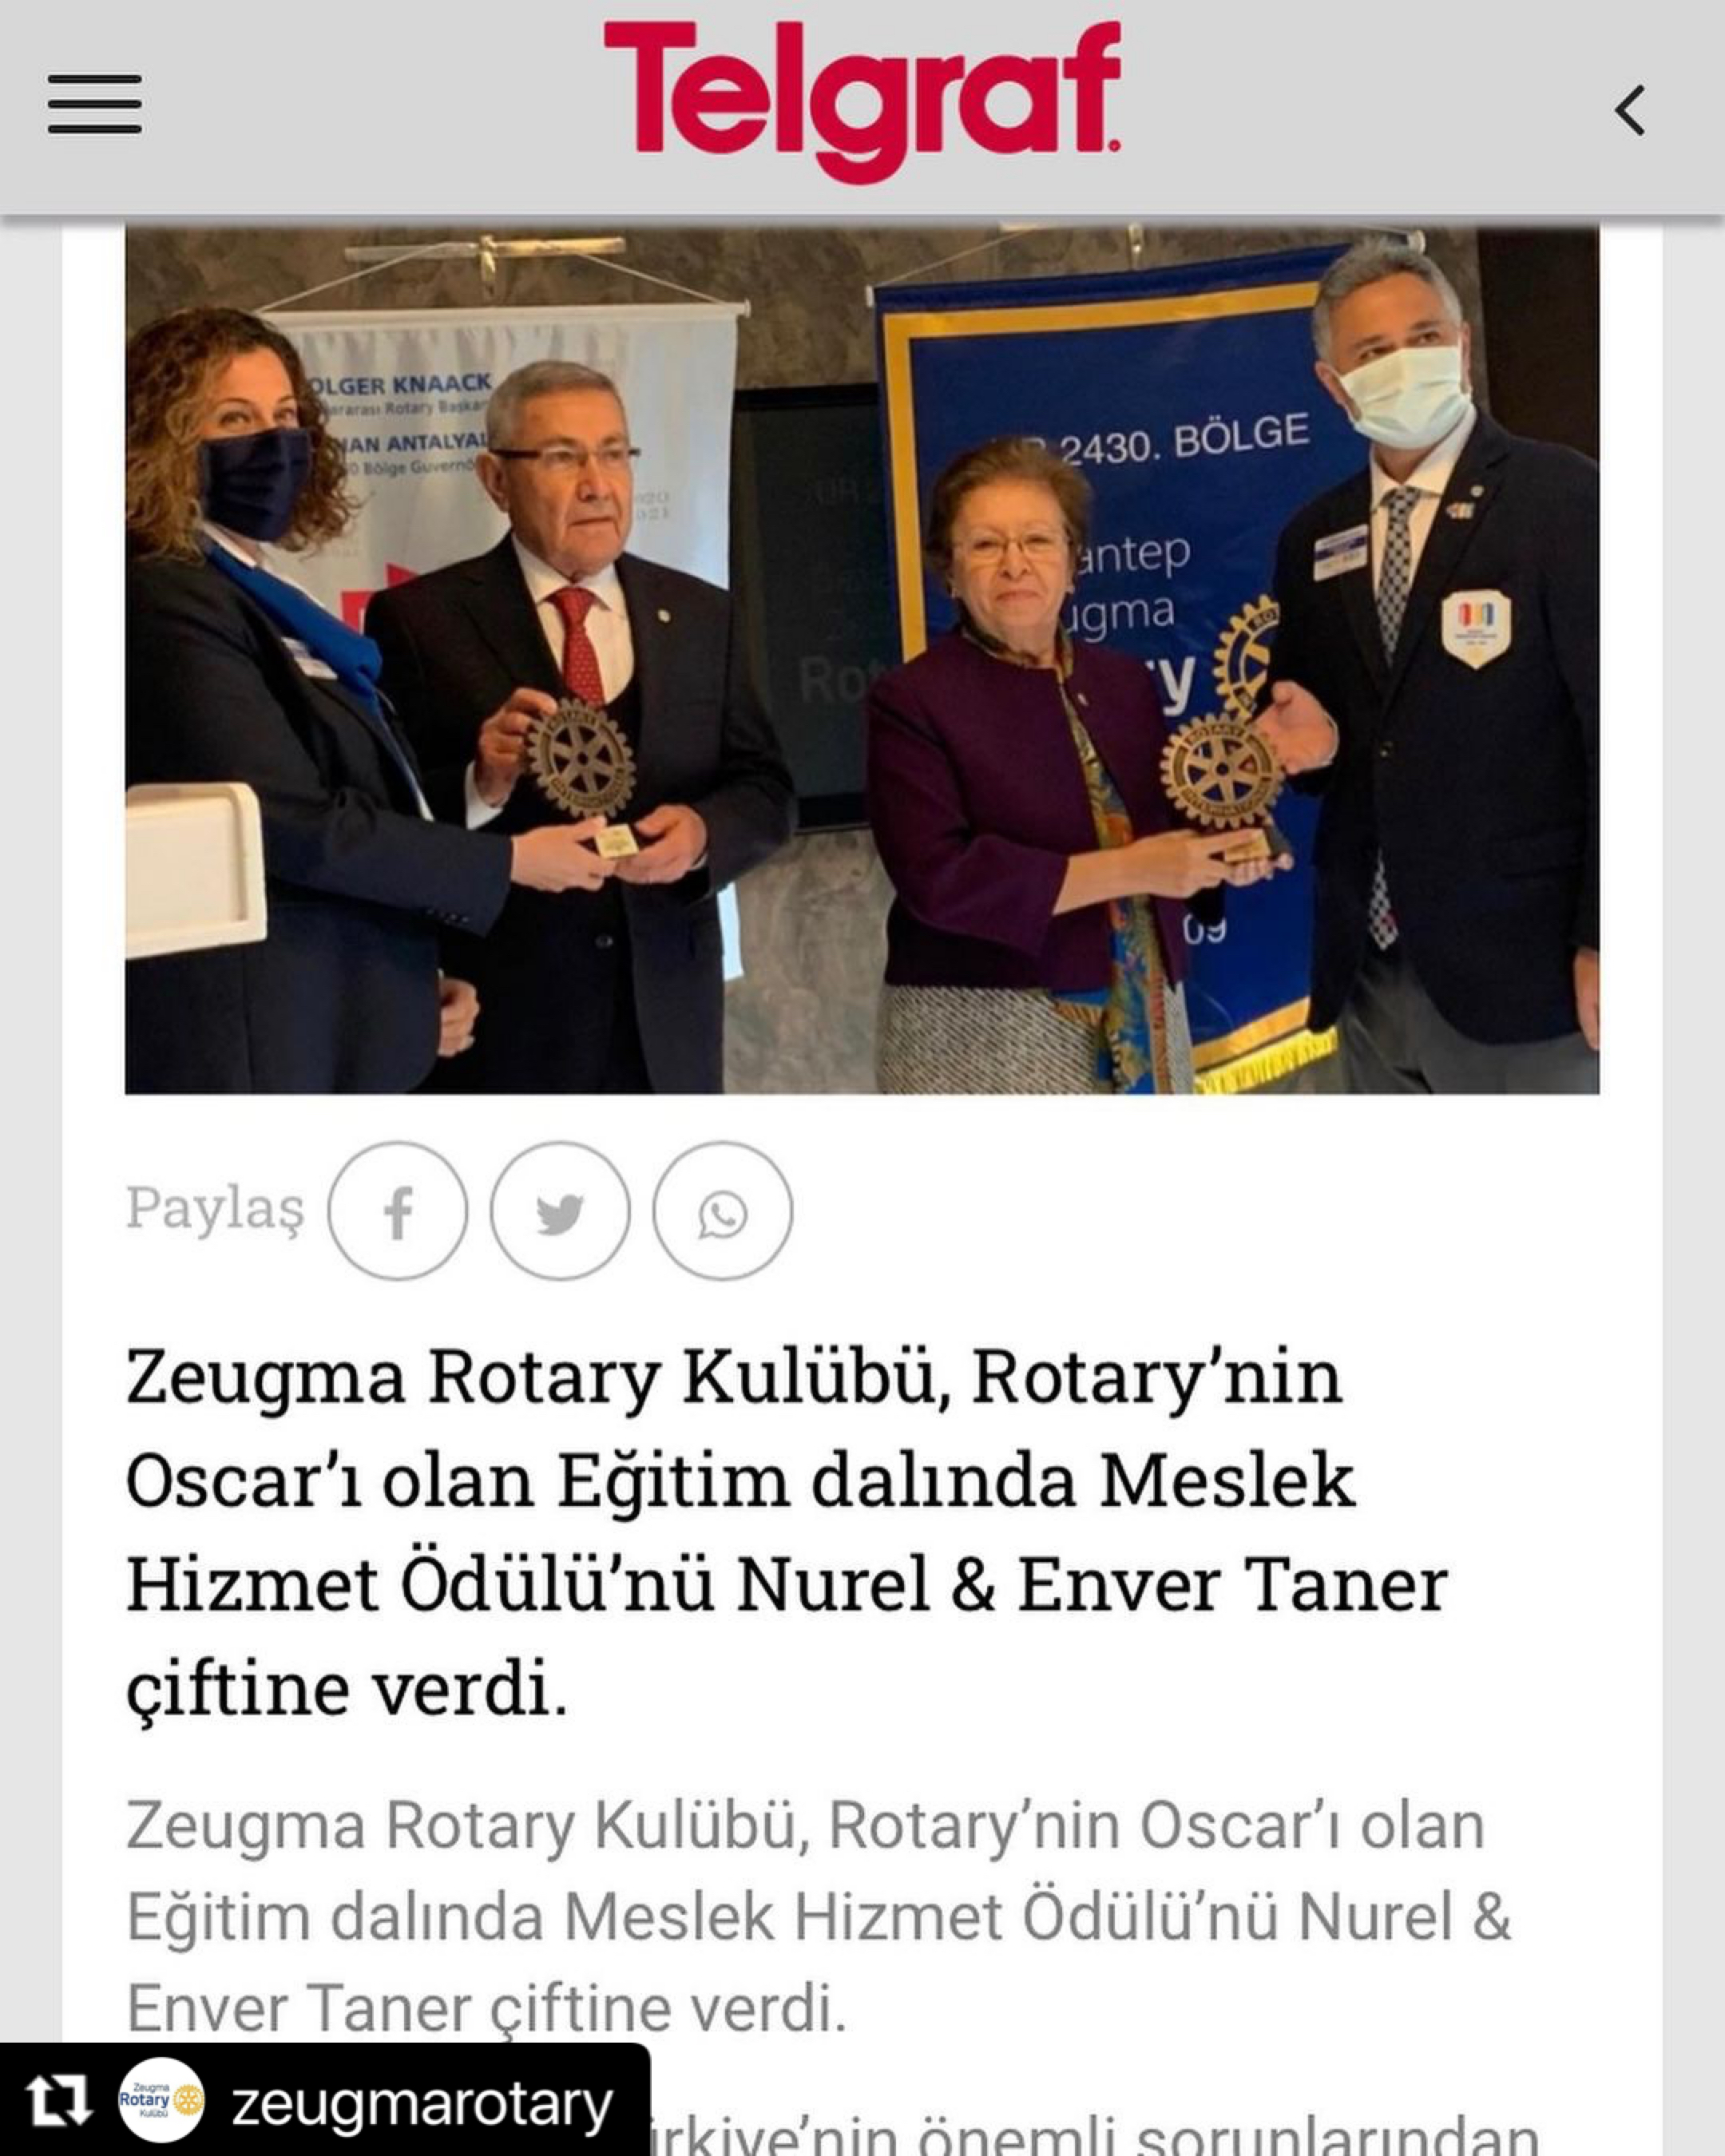 Zeugma Rotary Kulübü Meslek Hizmet Ödülü